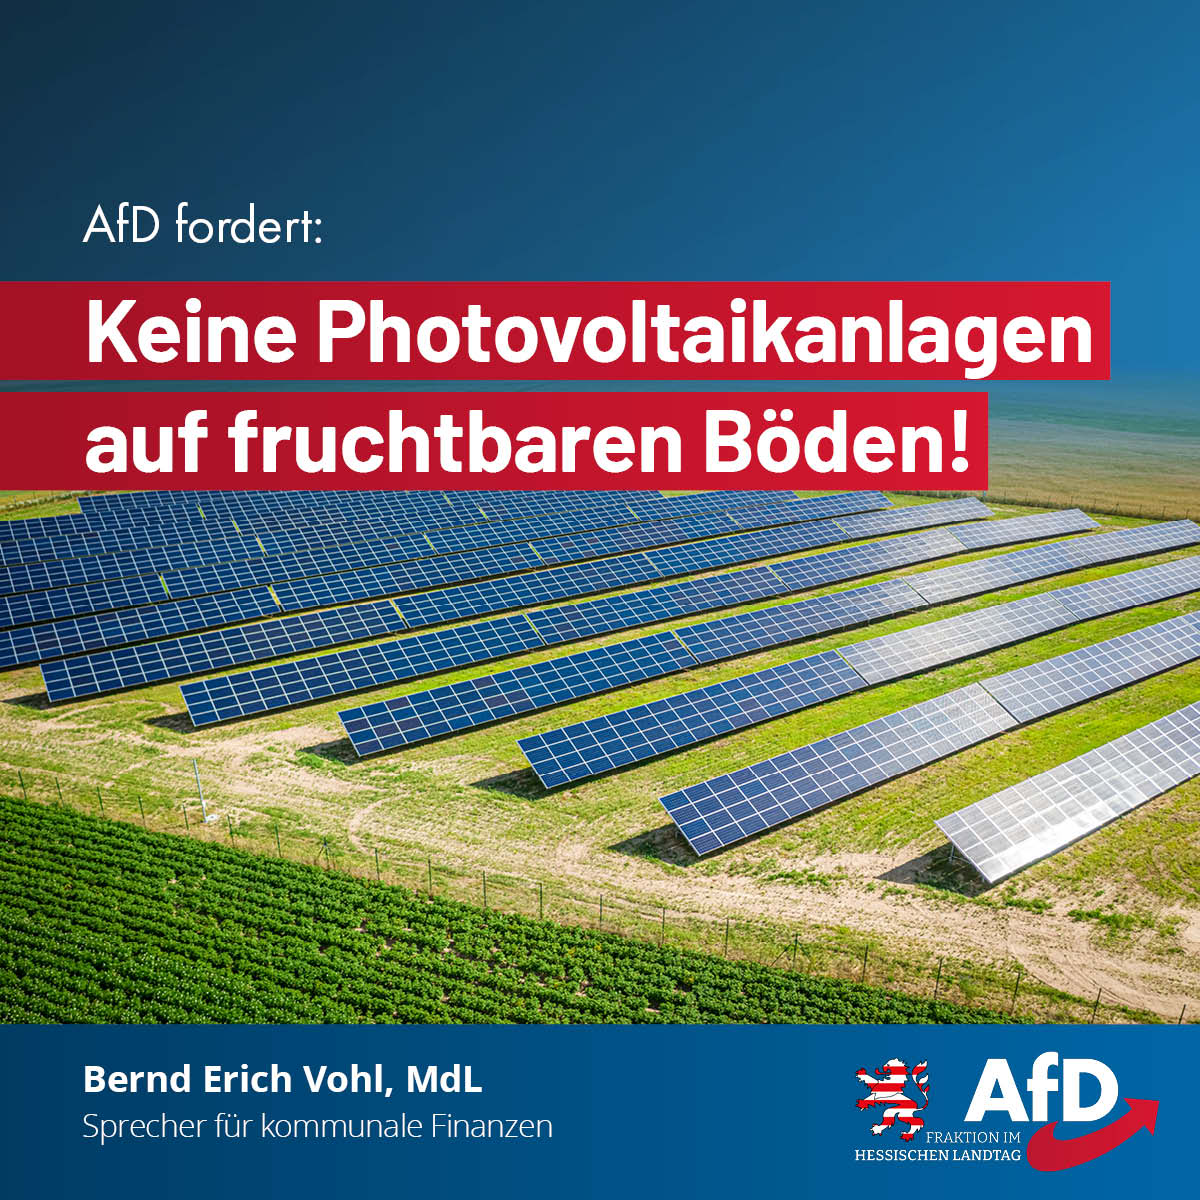 Mehr über den Artikel erfahren AfD fordert: Keine Photovoltaikanlagen auf fruchtbaren Böden